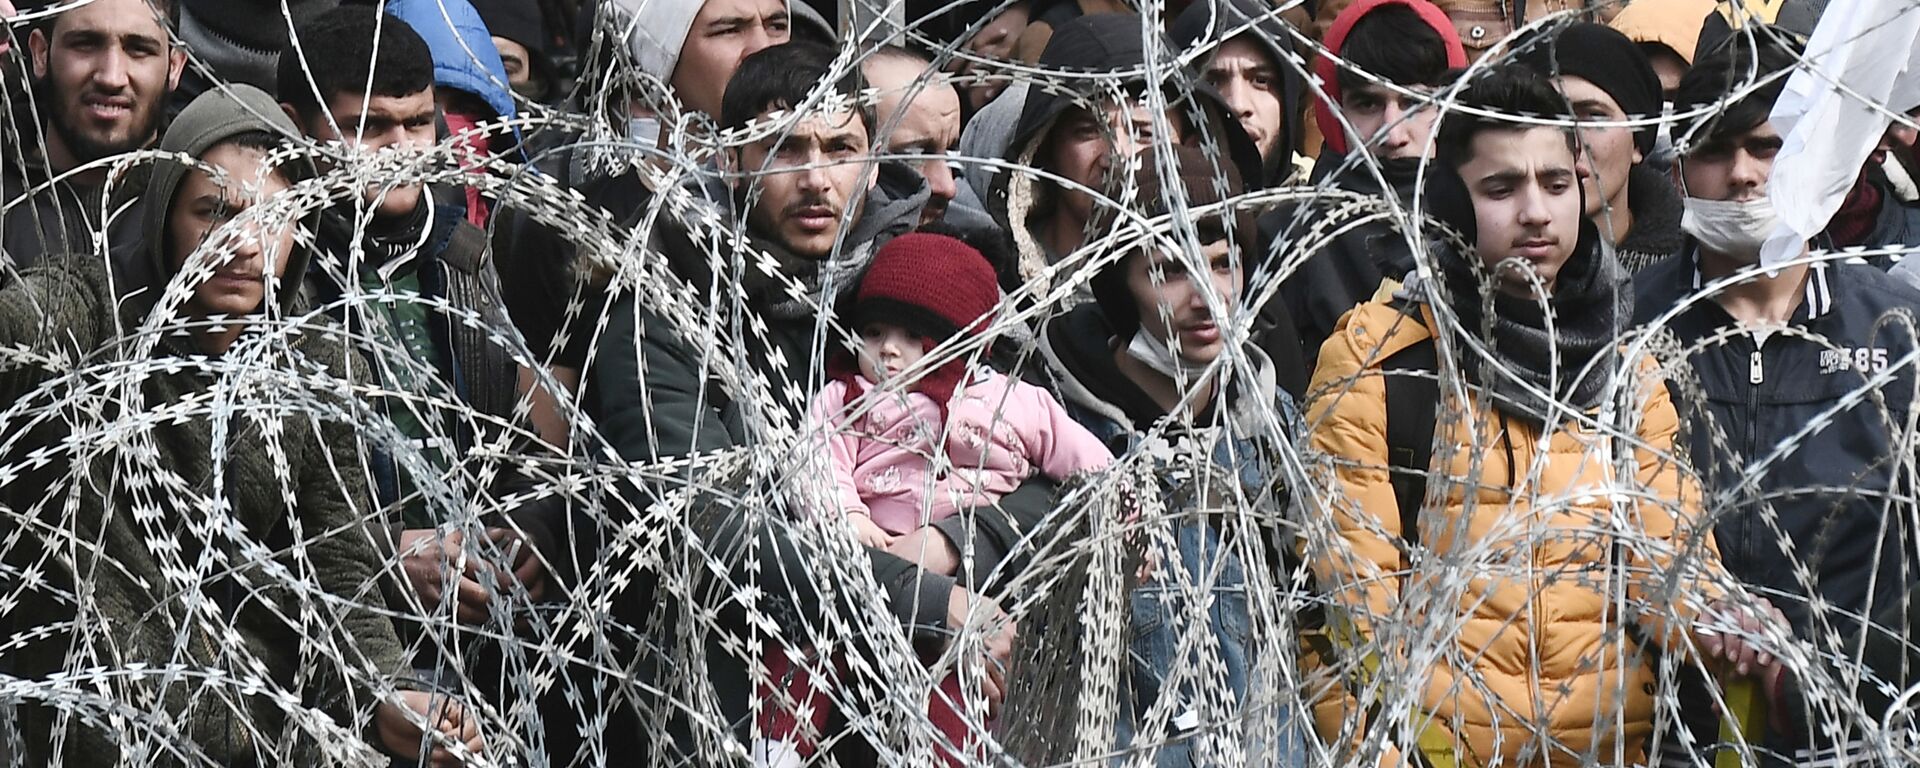 Türkiye-Yunanistan sınırı-mülteciler-göç-sığınmacılar - Sputnik Türkiye, 1920, 27.08.2021